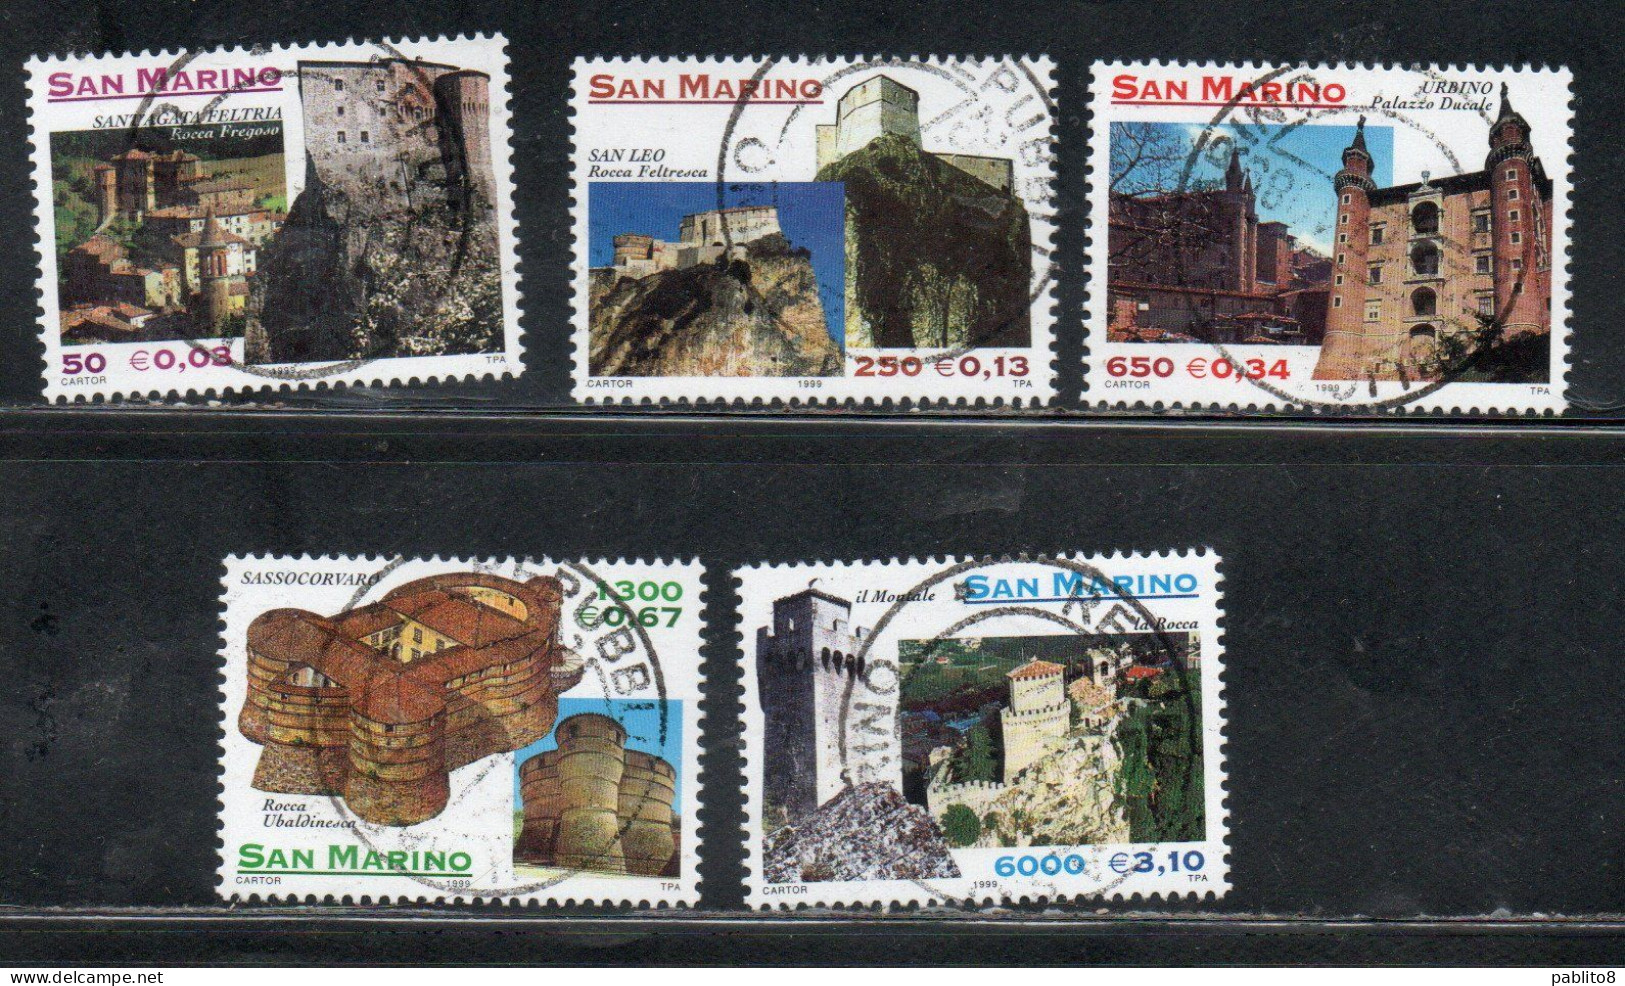 REPUBBLICA DI SAN MARINO 1999 ARCHITETTURA DEL MONTEFELTRO SERIE COMPLETA COMPLETE SET USATA USED OBLITERE' - Used Stamps